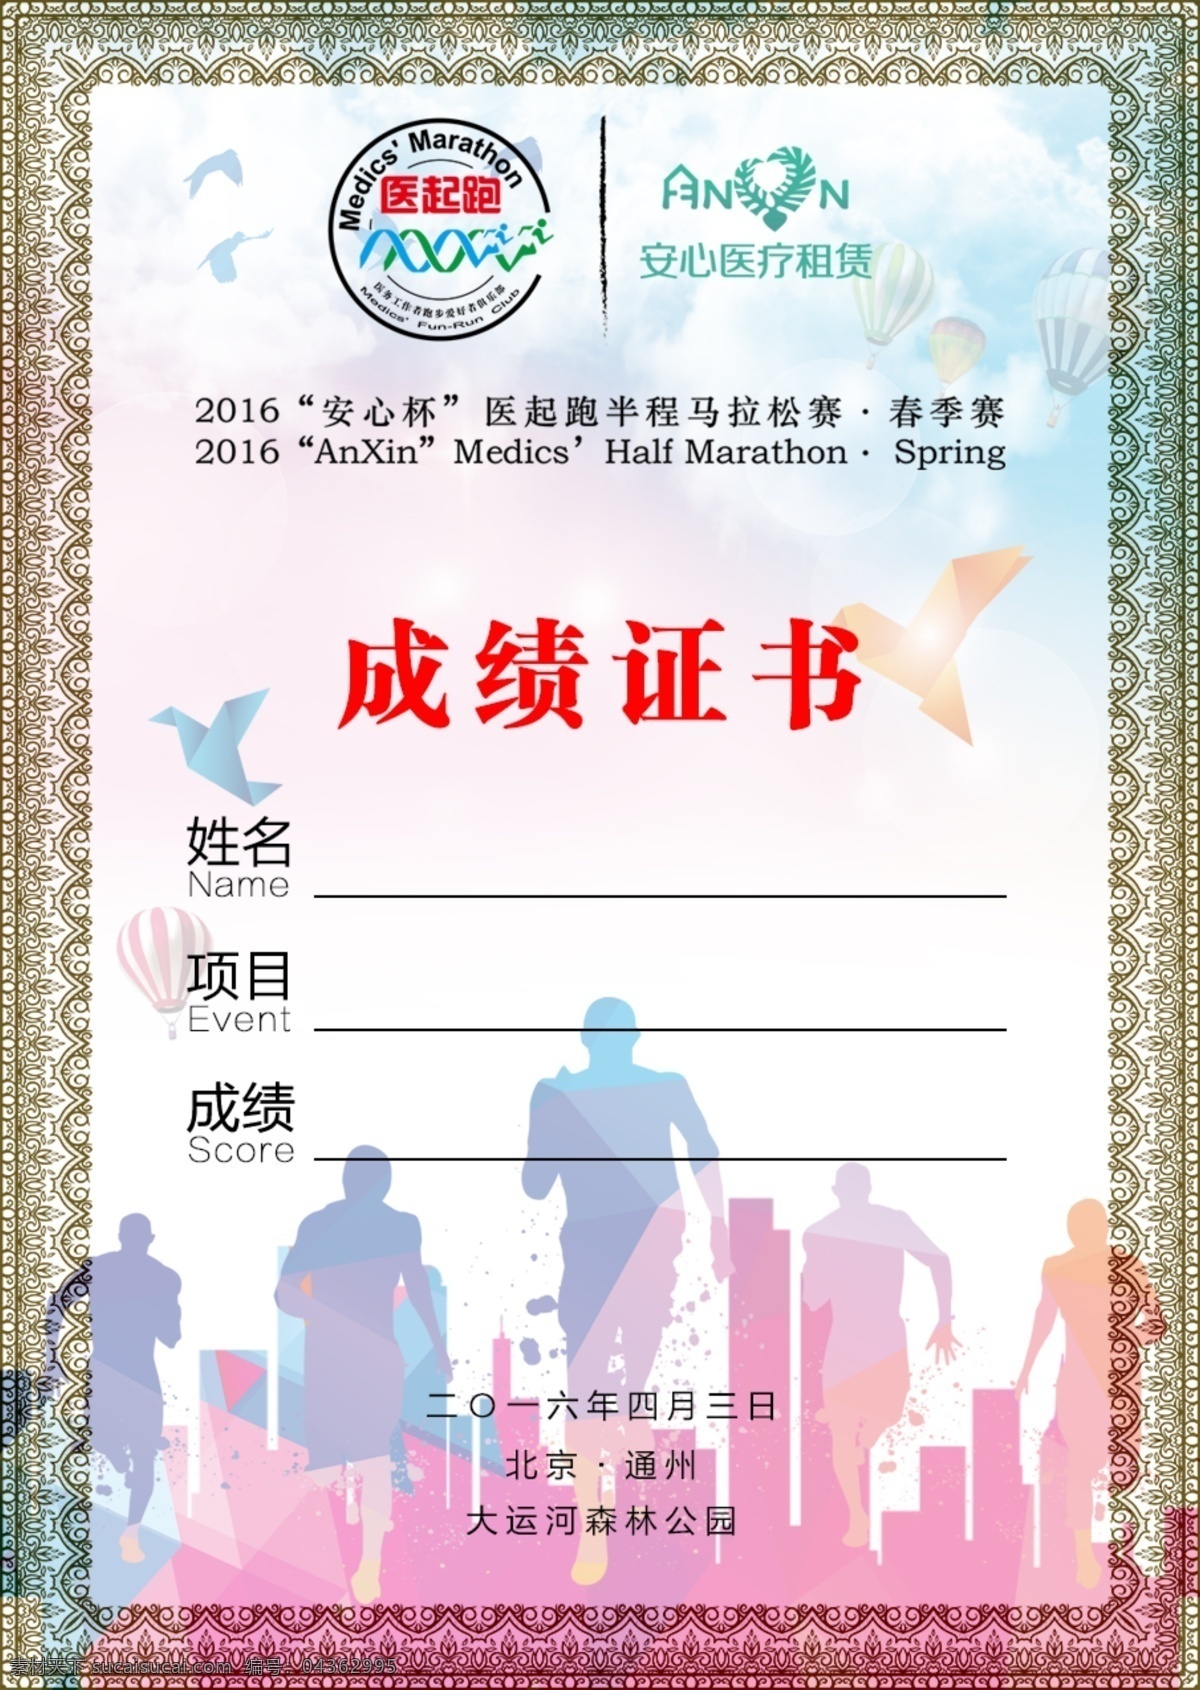 马拉松 成绩 证书 北京 背景 获奖证书 半程马拉松 成绩证明 背景素材 分层 源文件 300